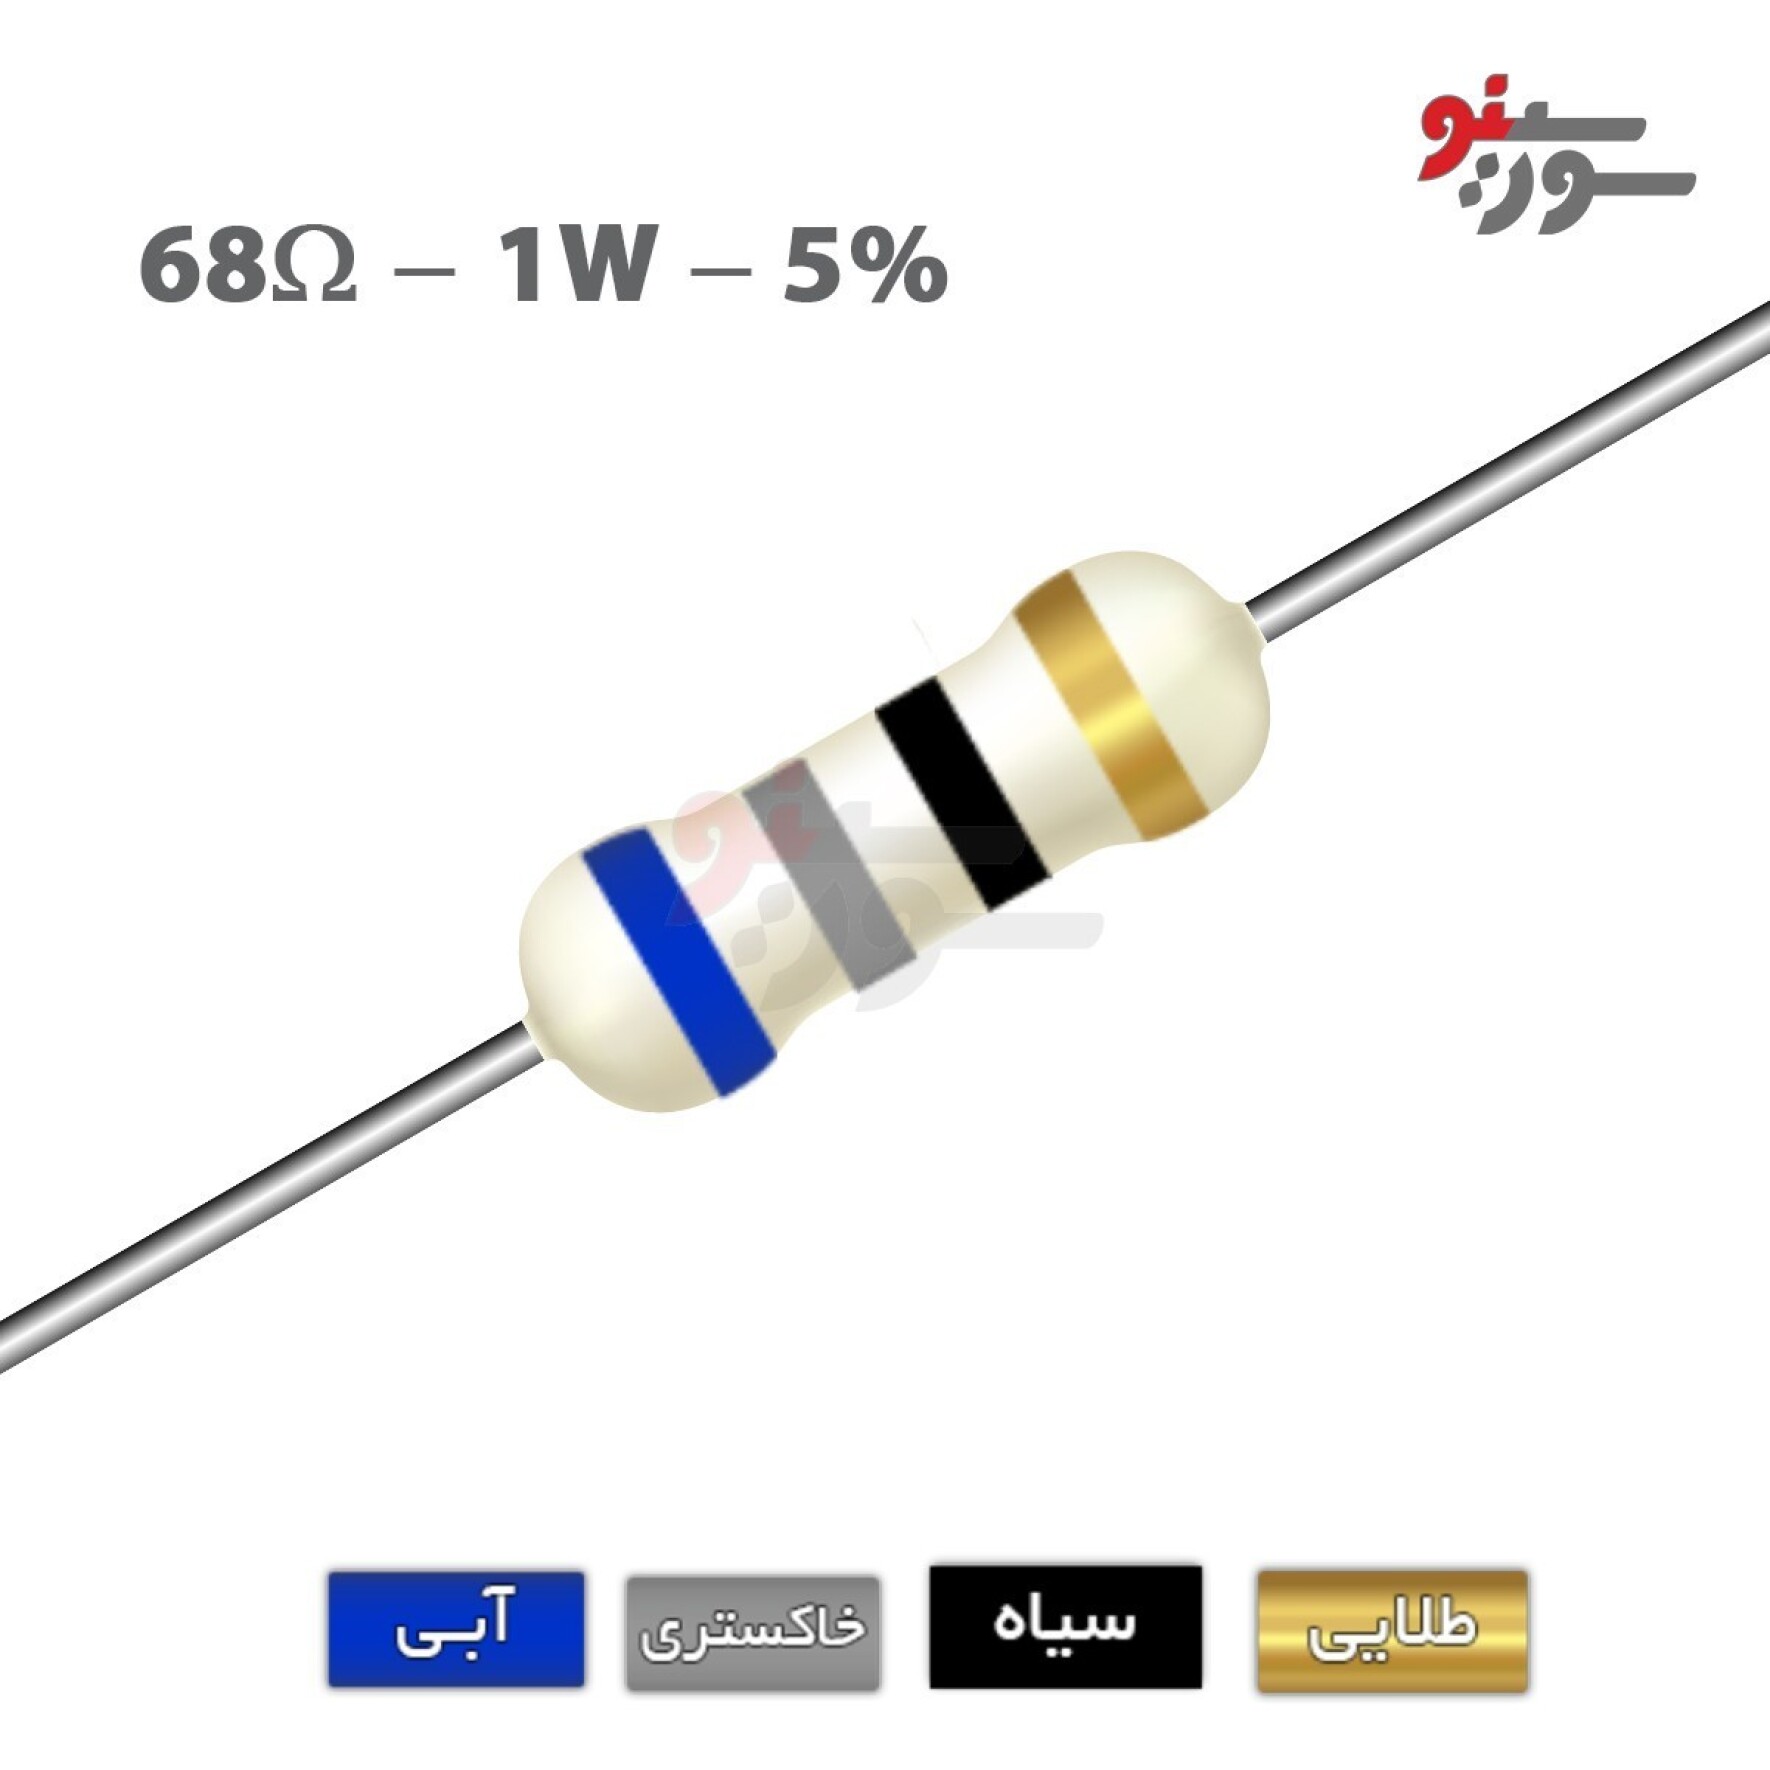 مقاومت 68 اهم 1 وات (68R-1W-5%)